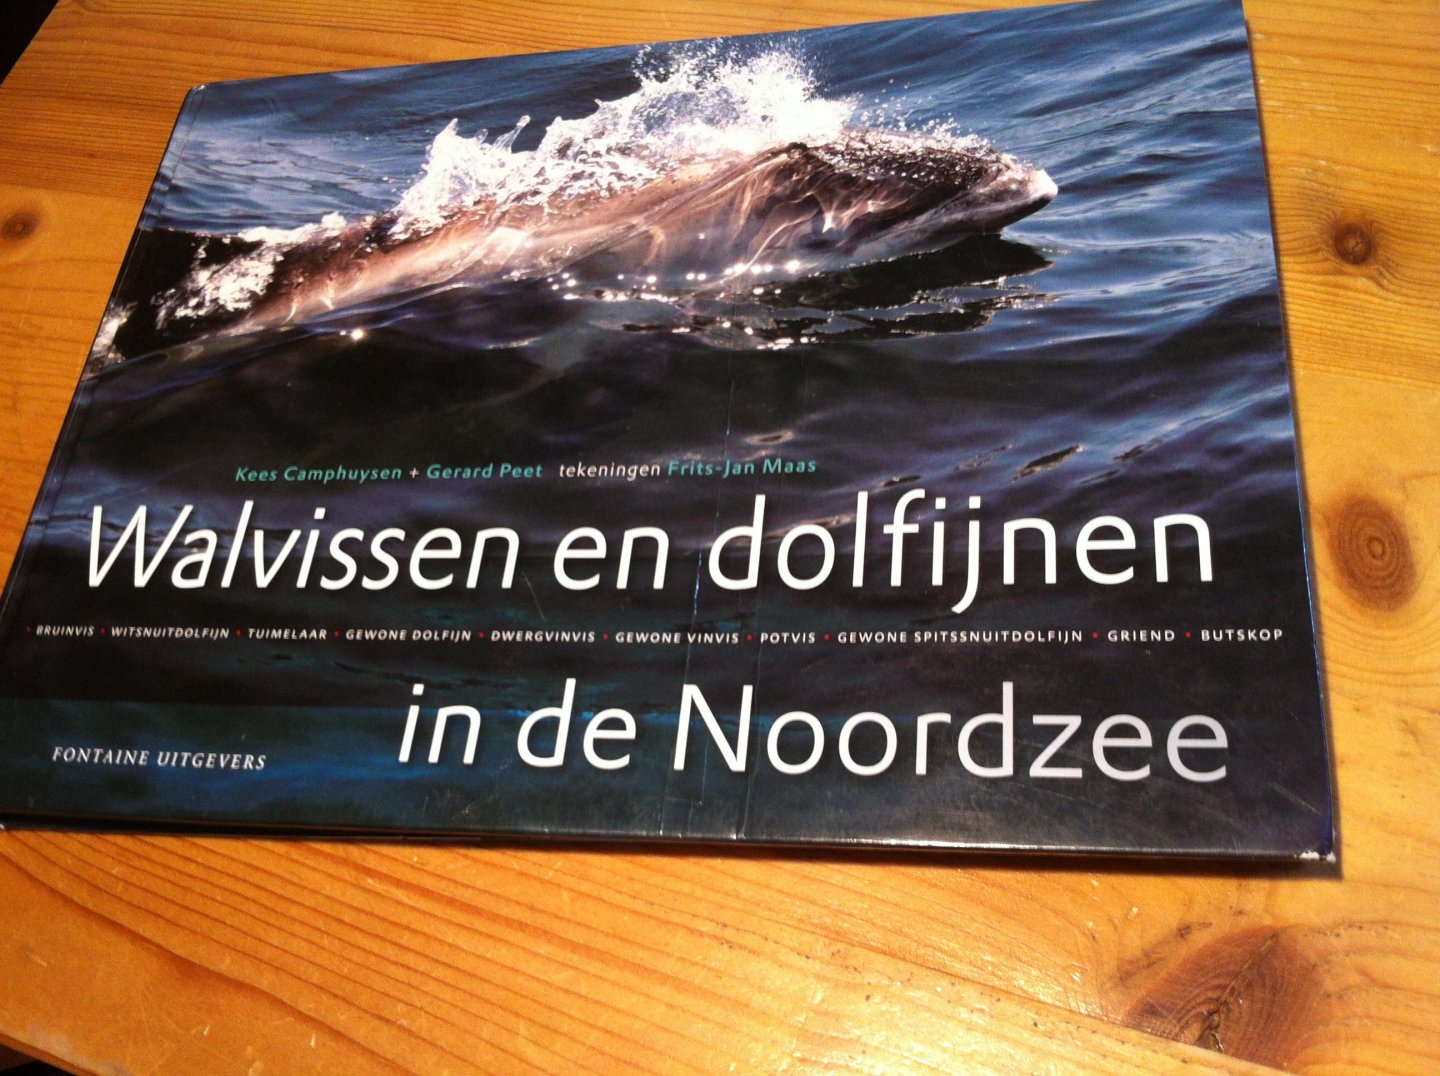 Camphuysen, Kees, Gerard Peet, Frits-Jan Maas - Walvissen en dolfijnen in de Noordzee